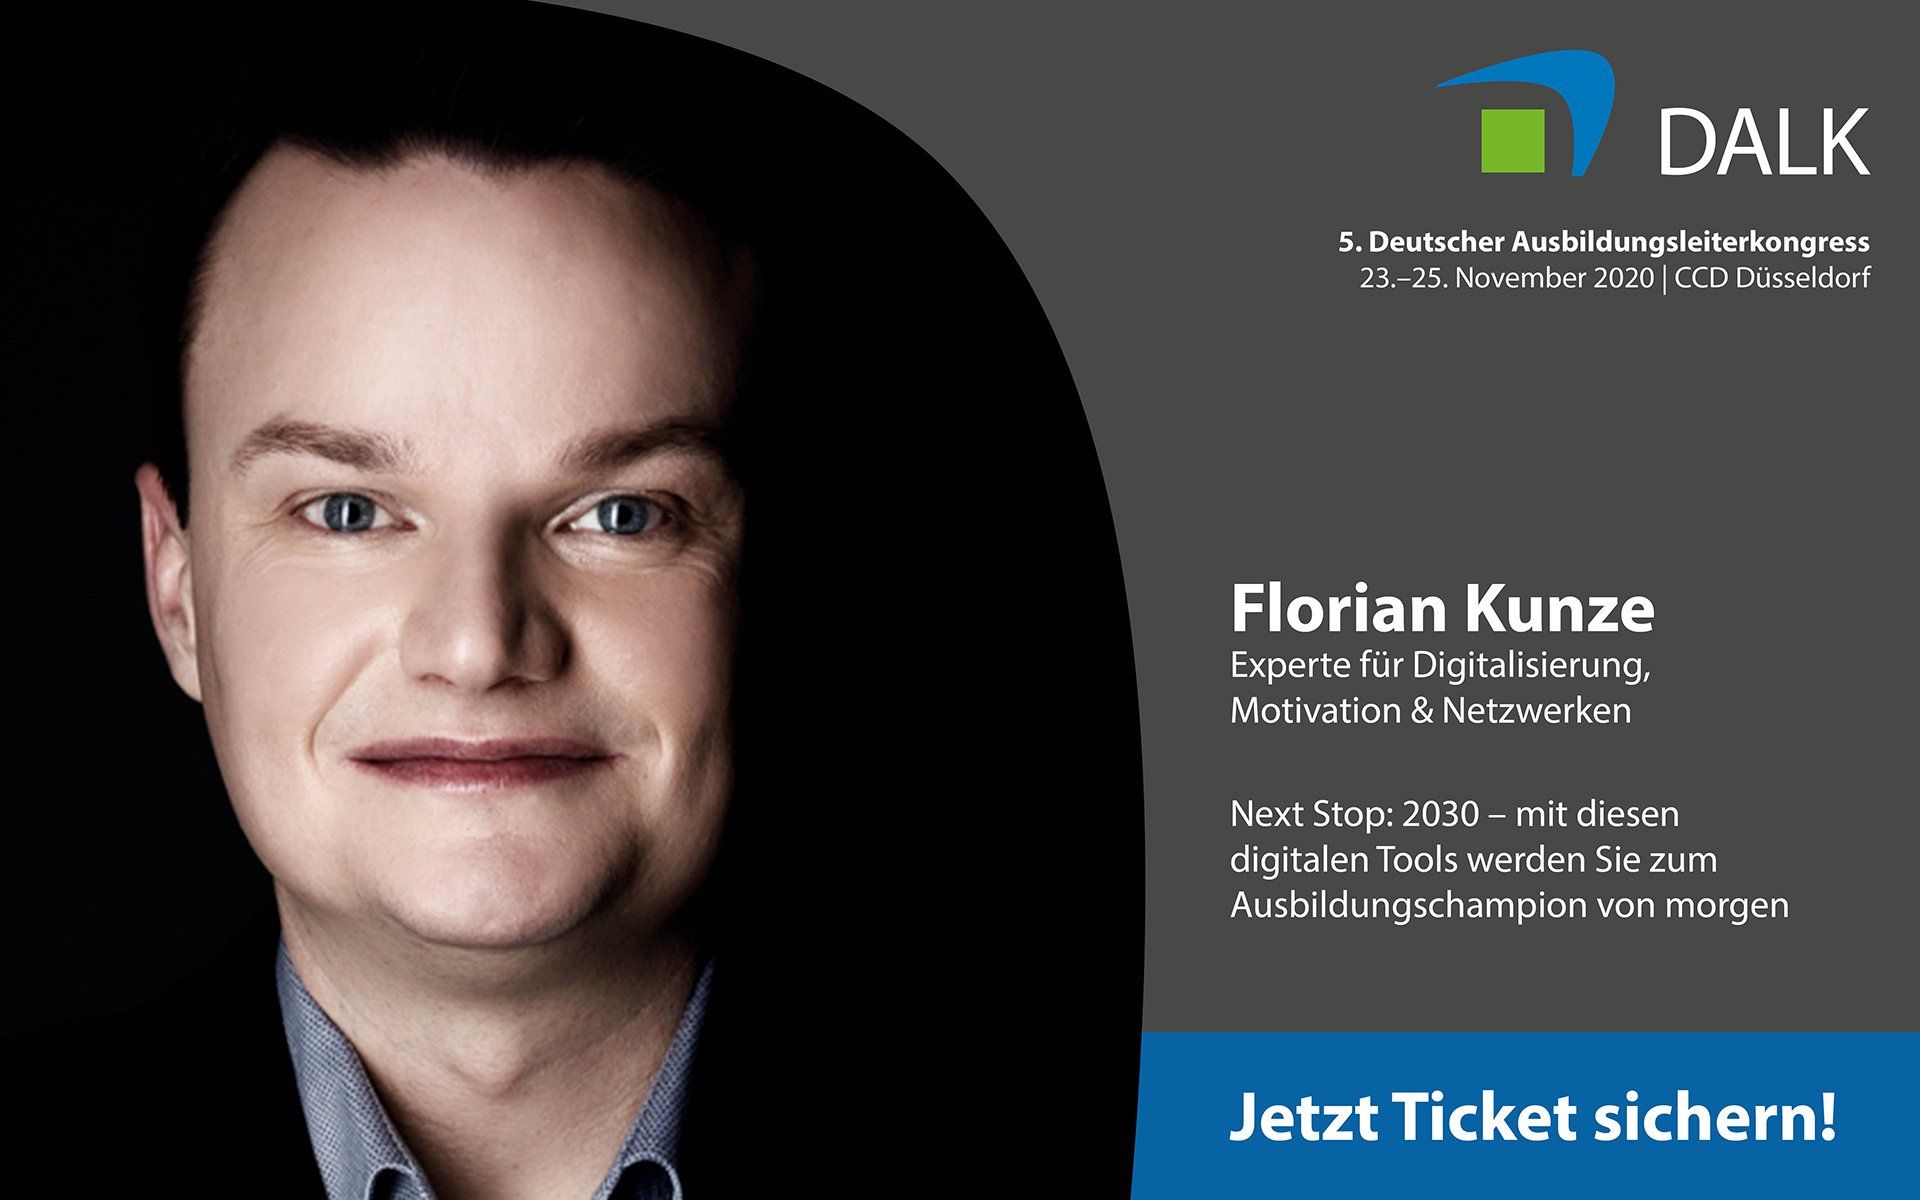 Florian-Kunze-Speaker-Digitalisierung-Motivation-Querdenken-Vortrag-DALK-2020-Deutscher-Ausbildungsleiterkongress